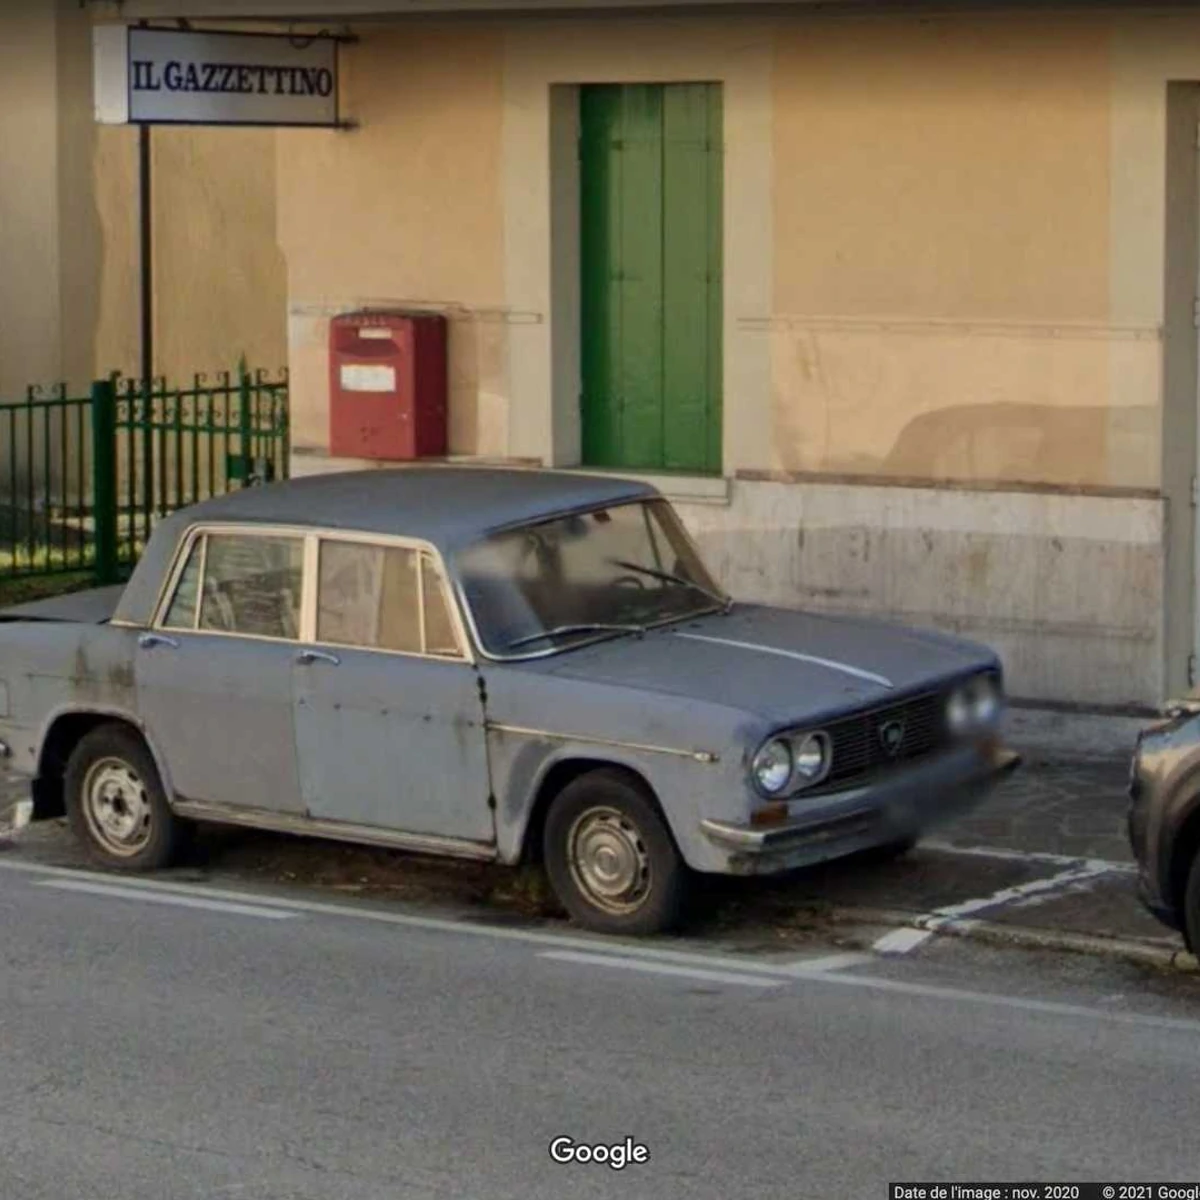 47 साल से एक ही जगह पर पार्किंग: लैंसिया फुल्विया, जो इटली में एक स्मारक बन गया है